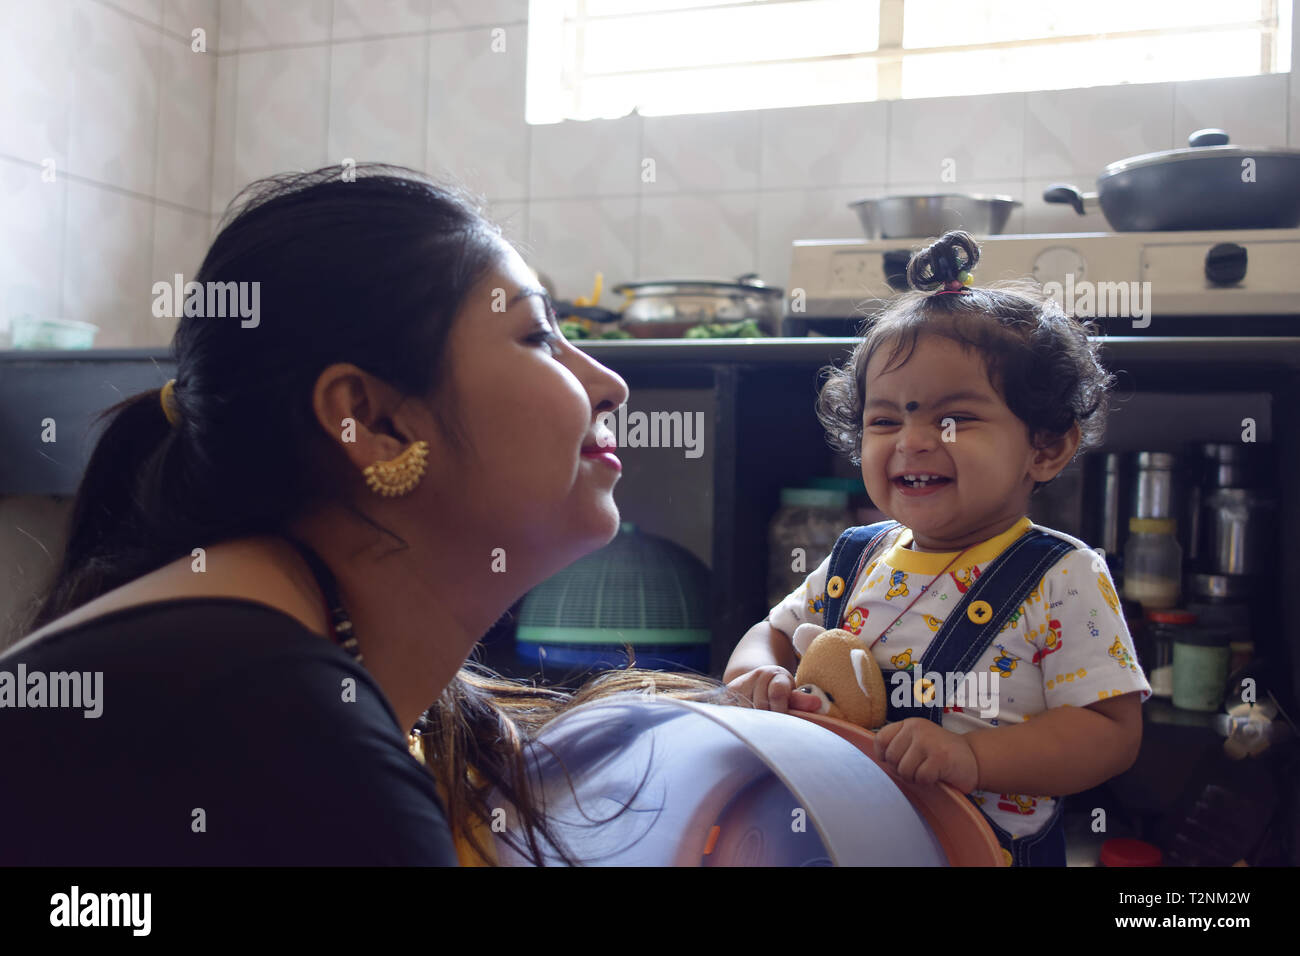 Une belle mère indienne joue avec son bébé fillette dans un environnement accueillant. Banque D'Images